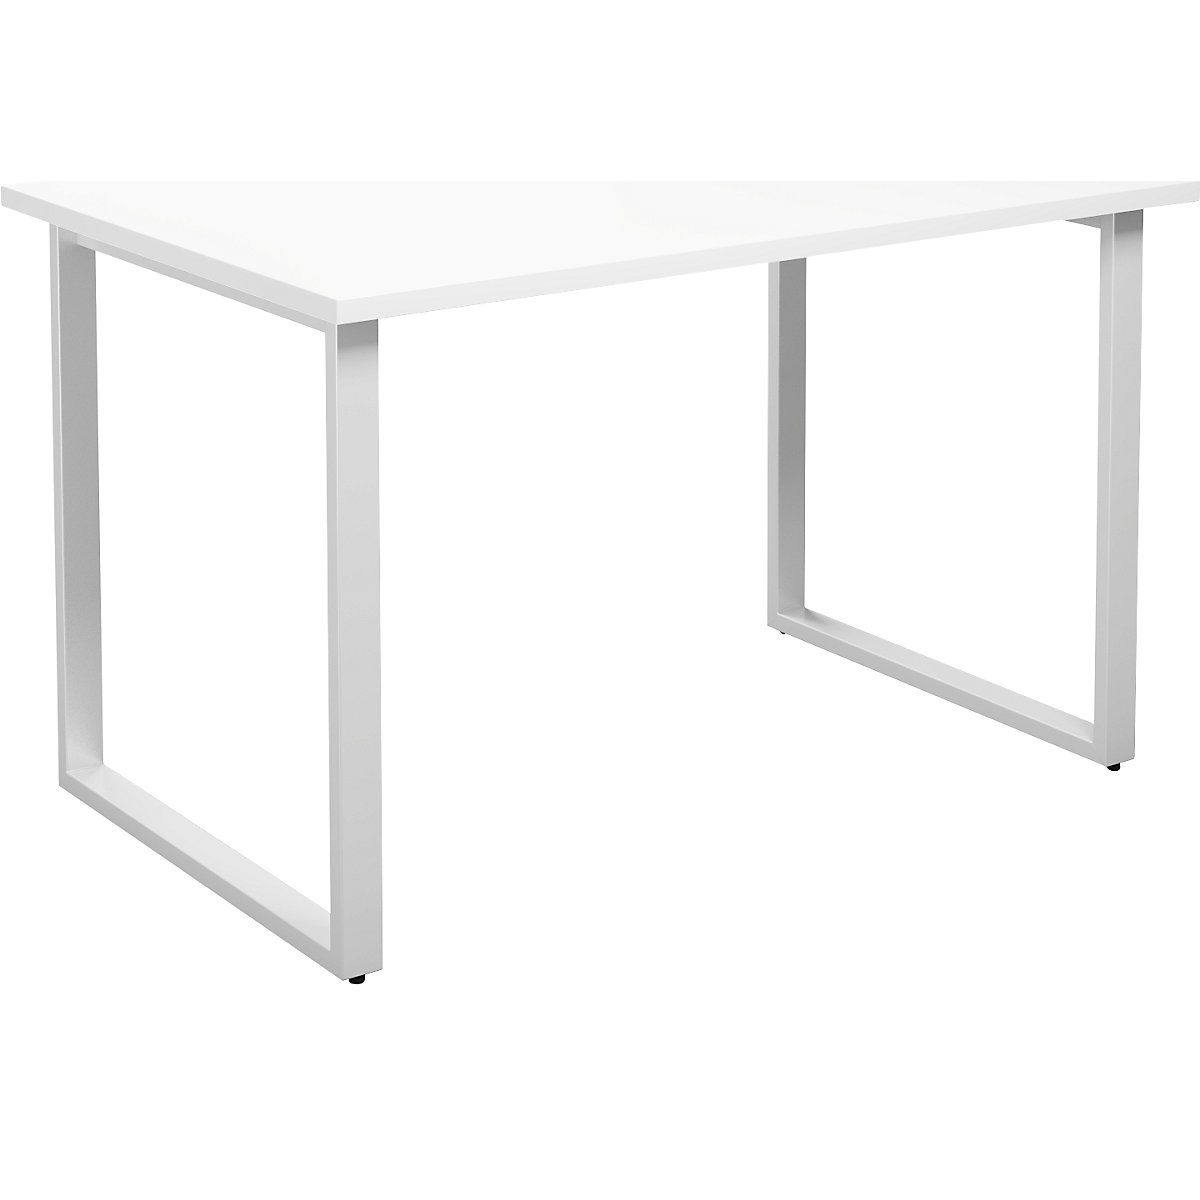 DUO-O multi-purpose desk, straight tabletop, WxD 1200 x 800 mm, white, white-1